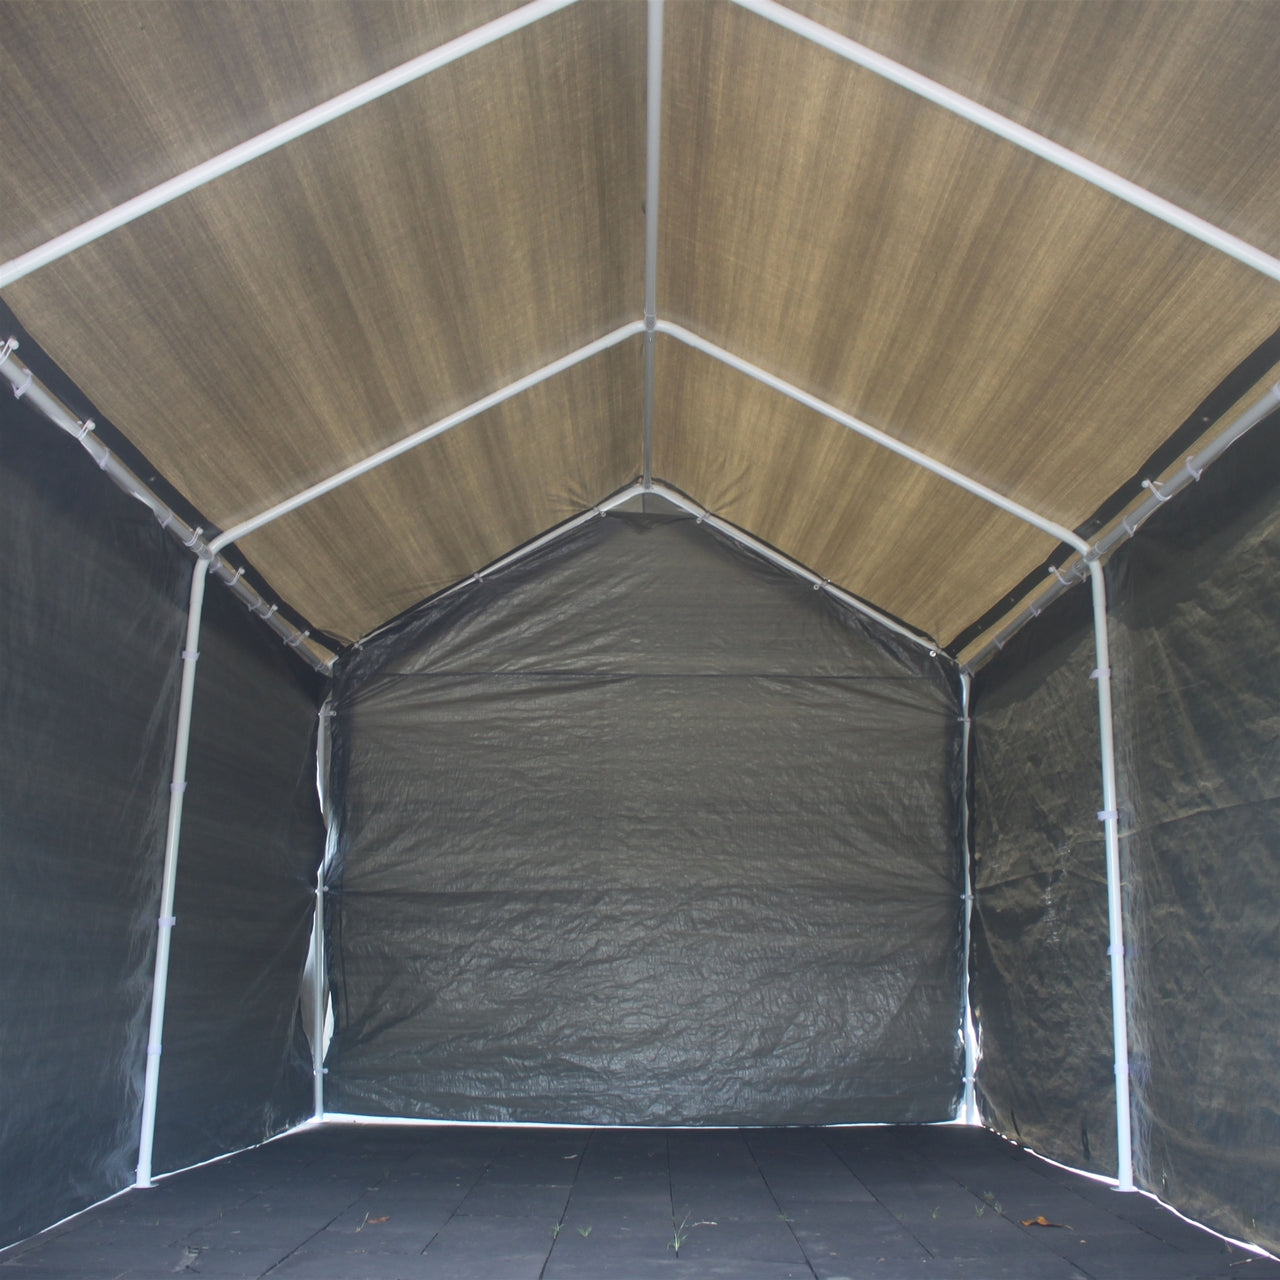 Aleko Carports Heavy Duty Outdoor Canopy Carport Tent - 10 X